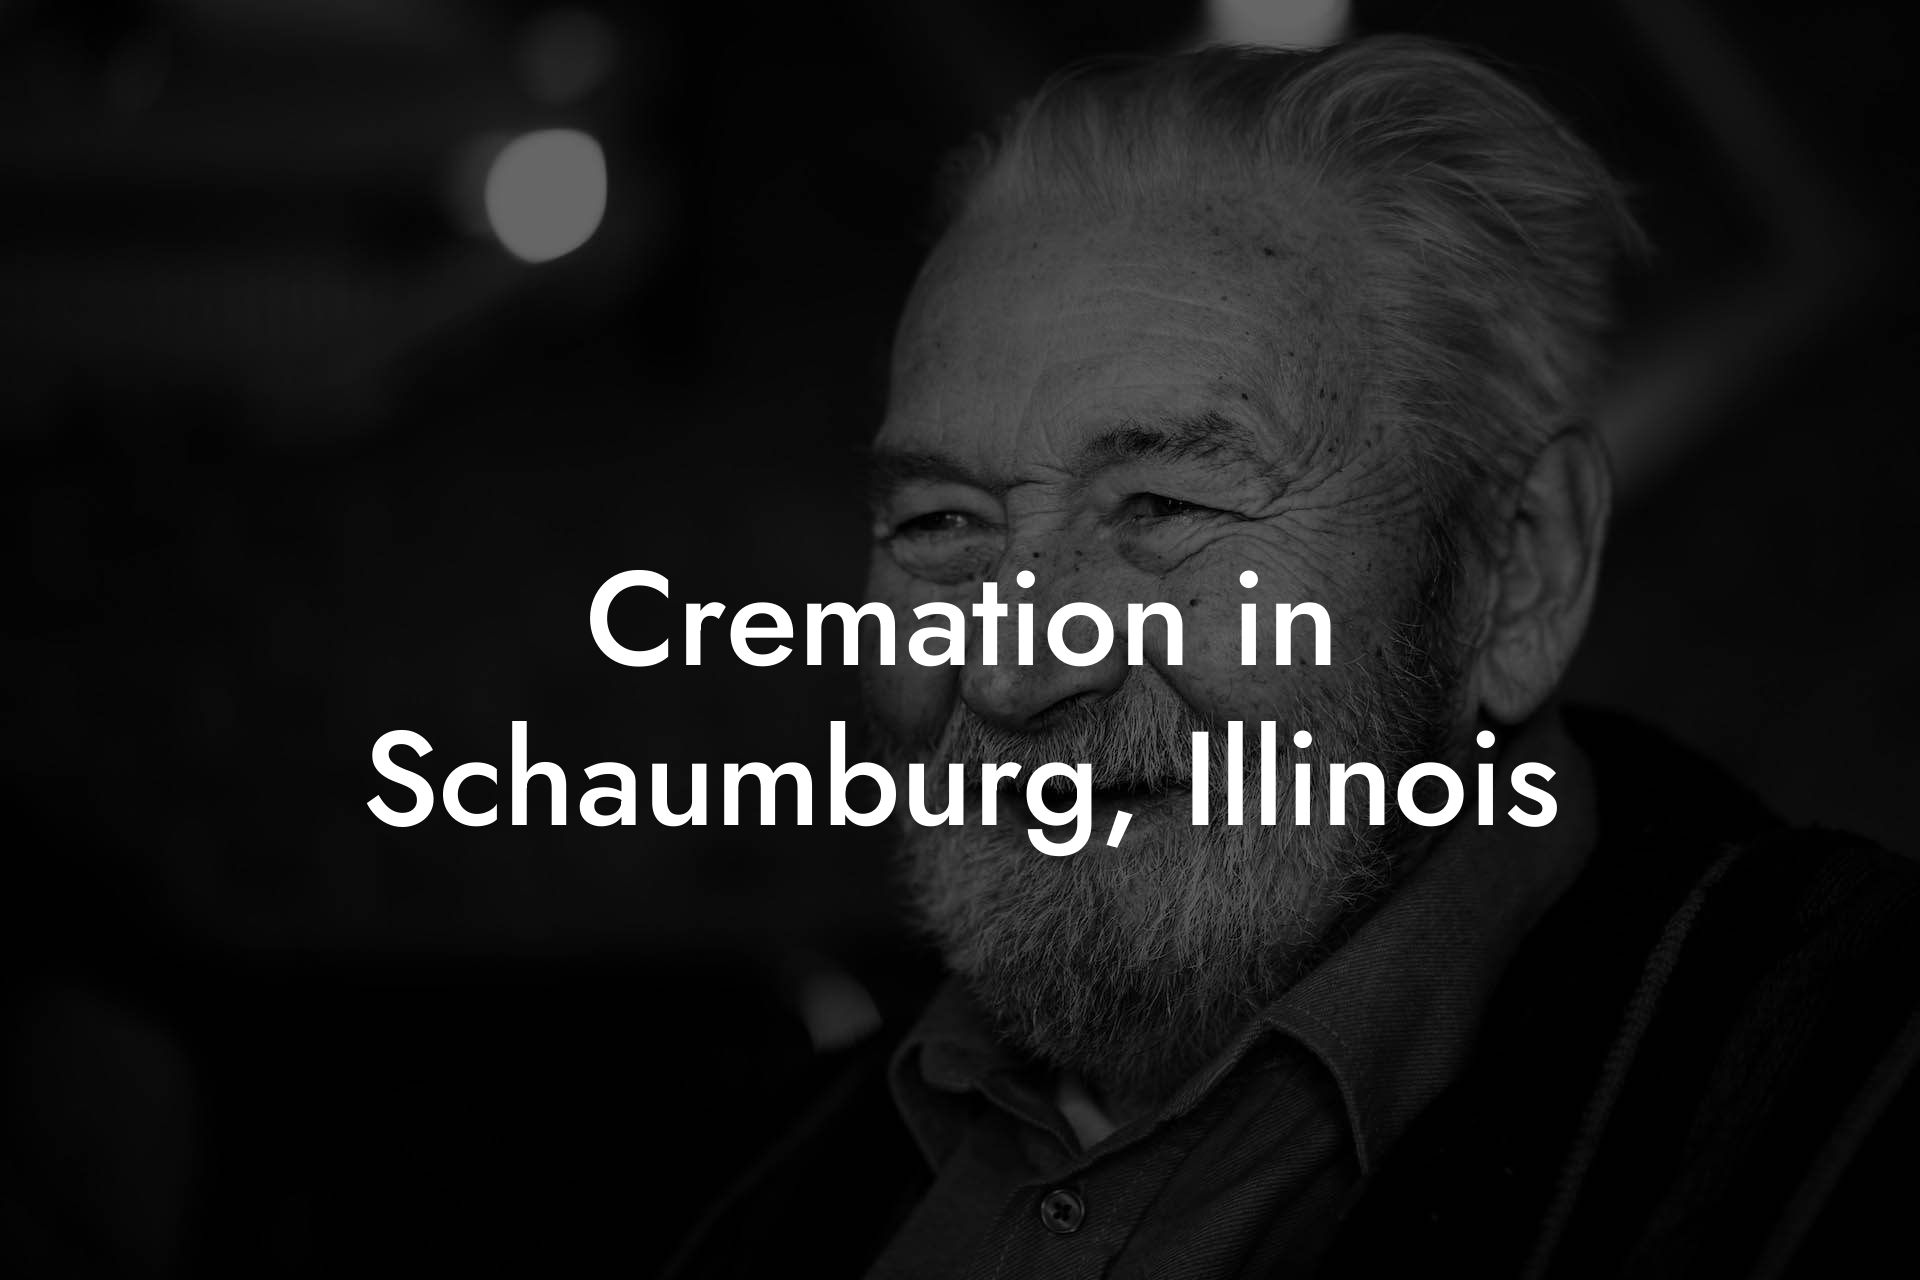 Cremation in Schaumburg, Illinois